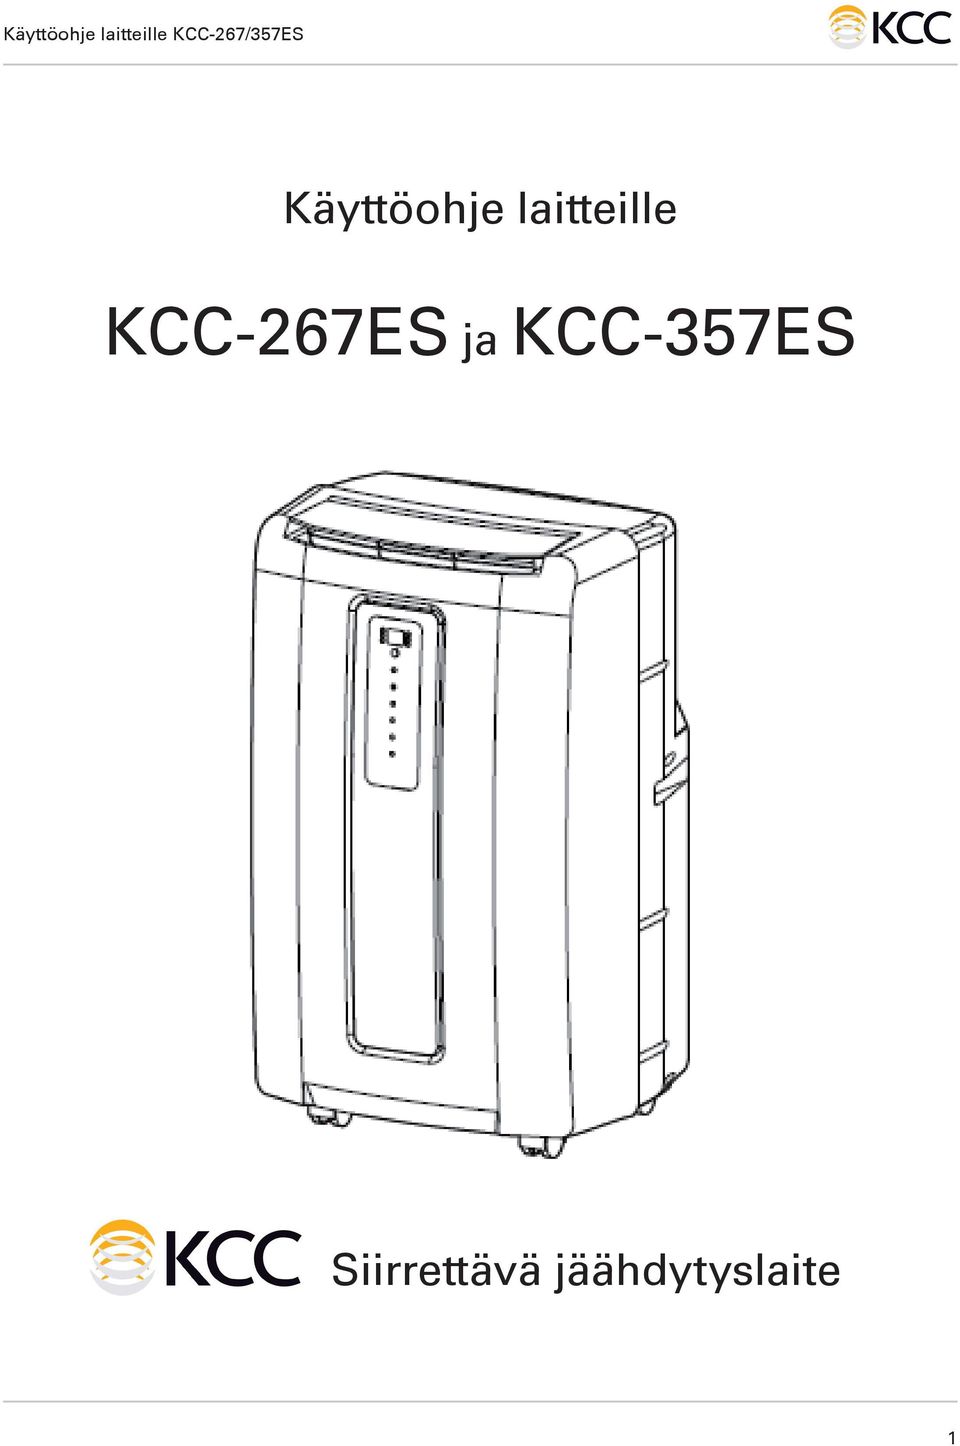 KCC-267ES ja